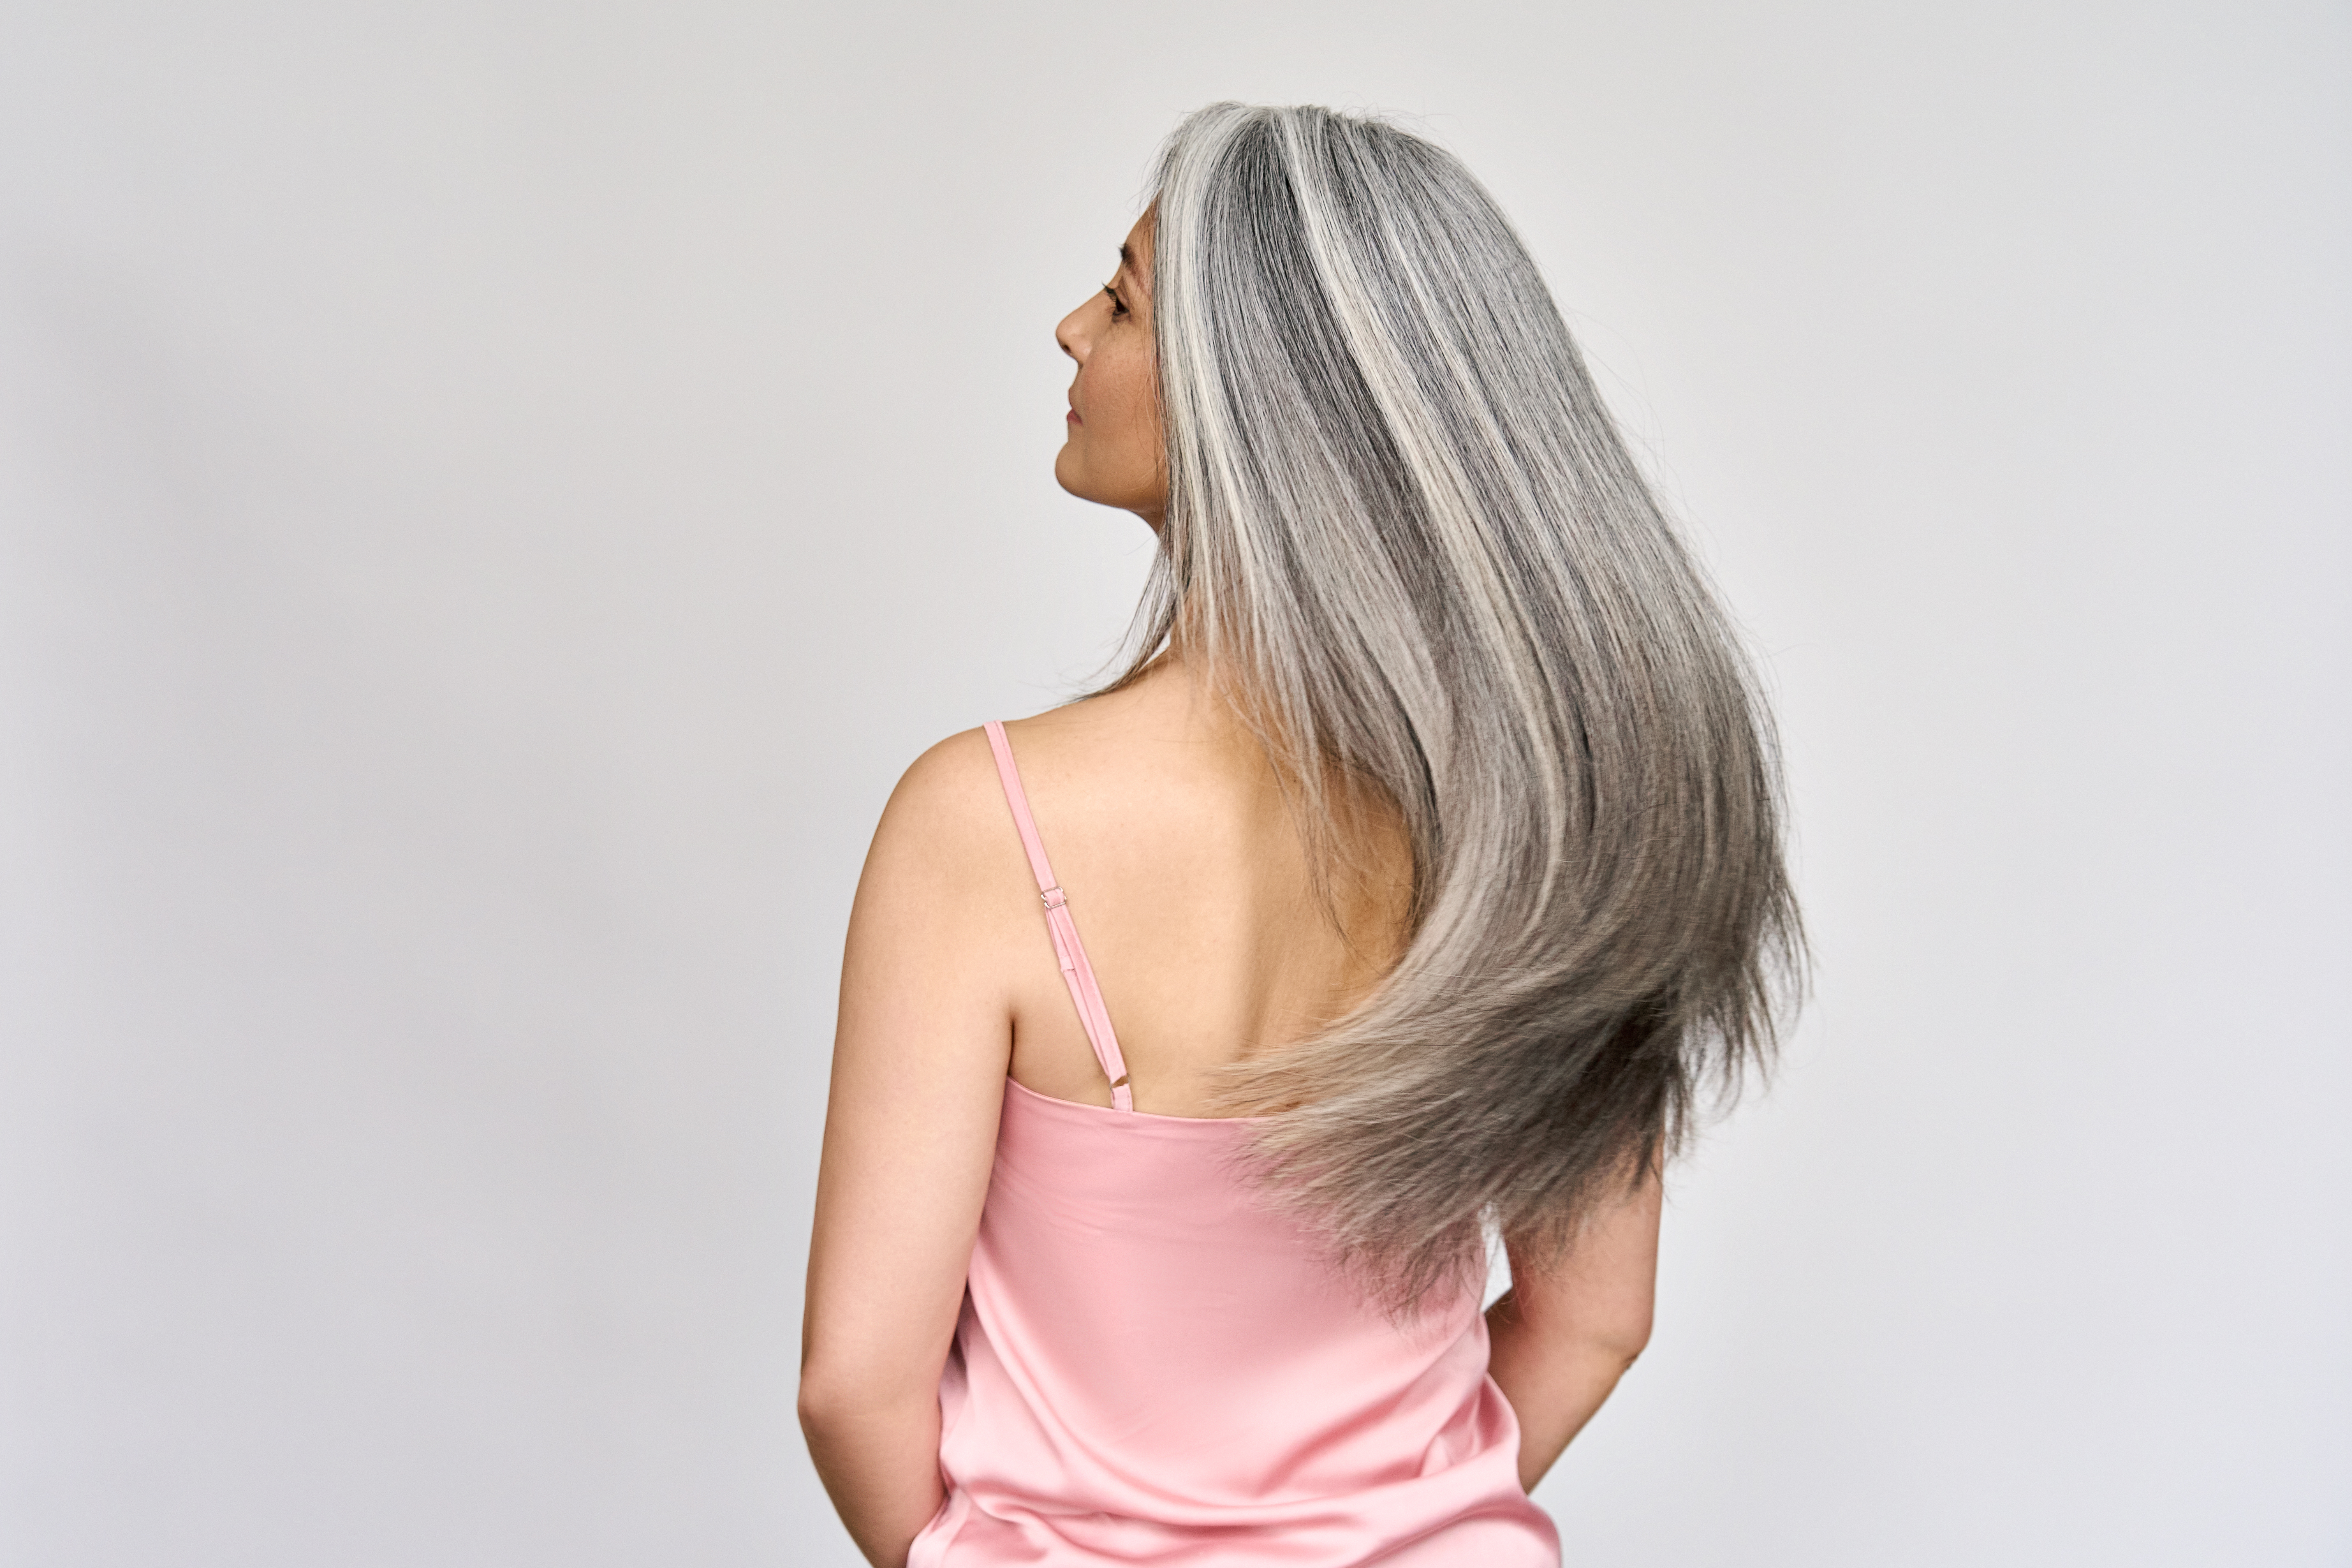 Femme aux cheveux gris balançant sa chevelure | Source : Shutterstock